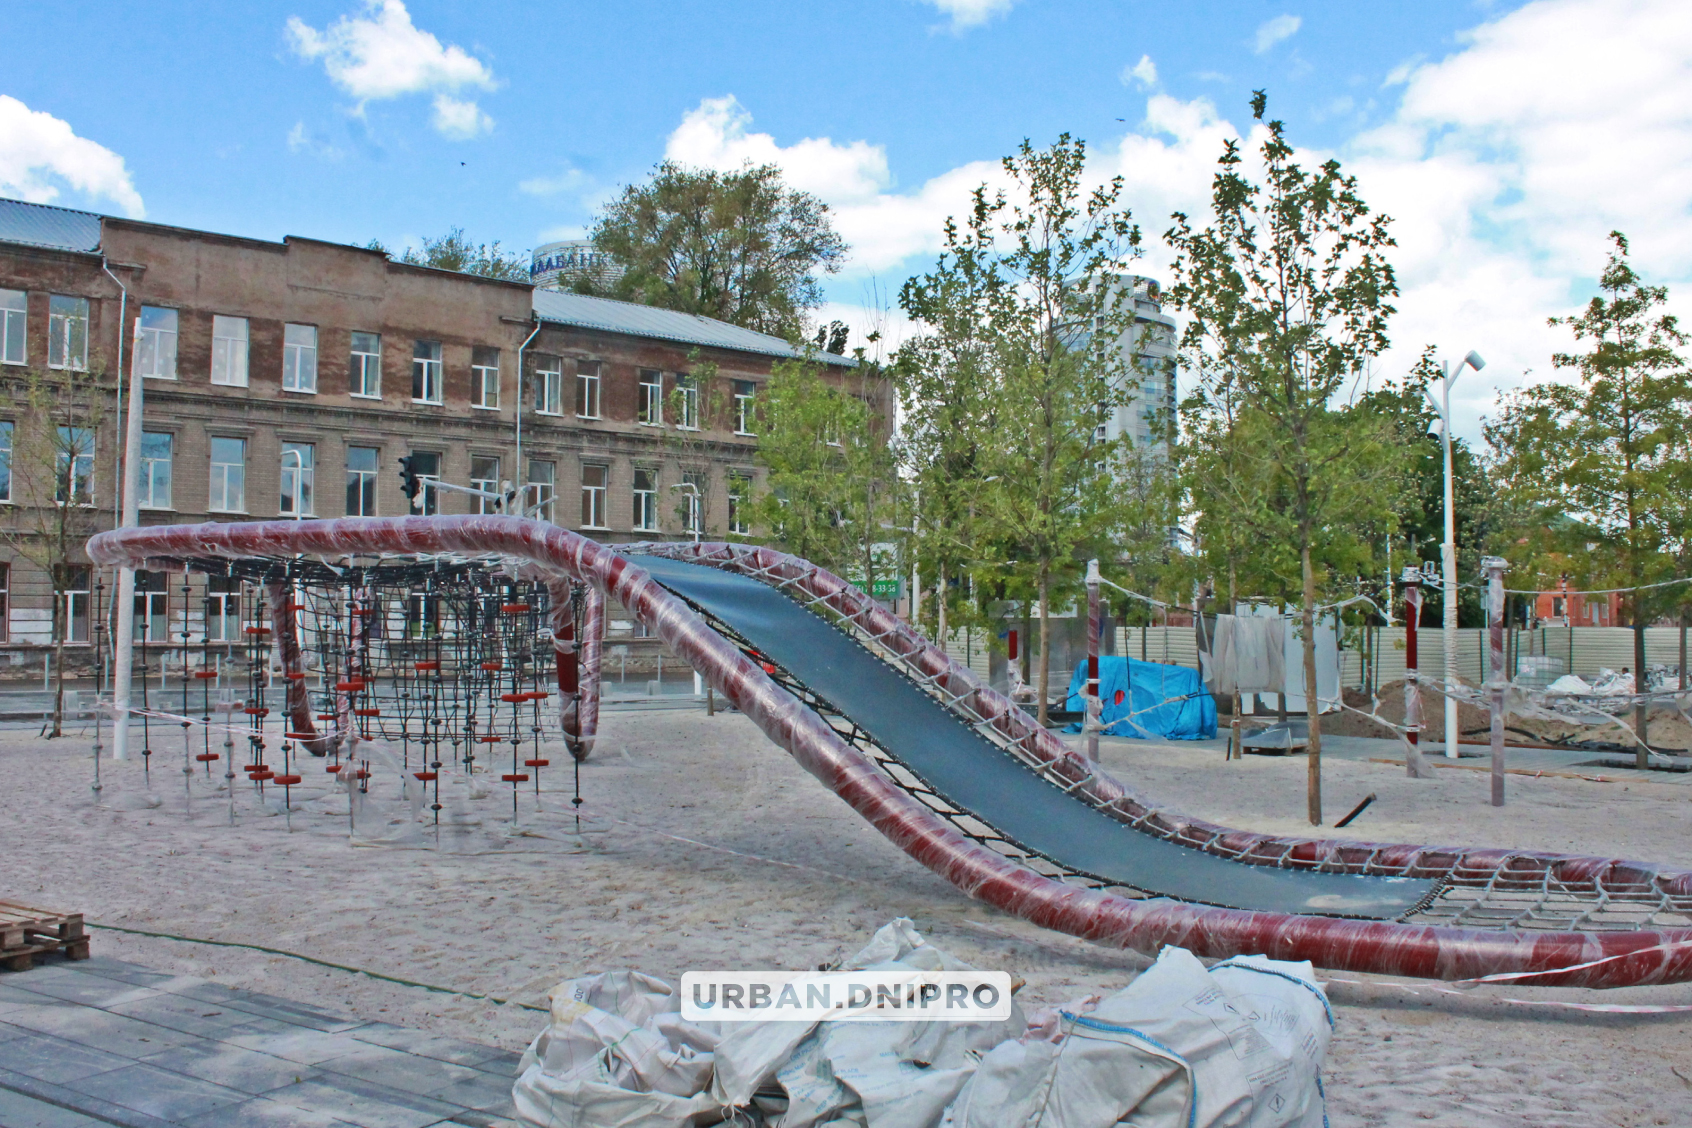 Новости Днепра про Скалодром и много деревьев: что будет на реконструированной Успенской площади в Днепре